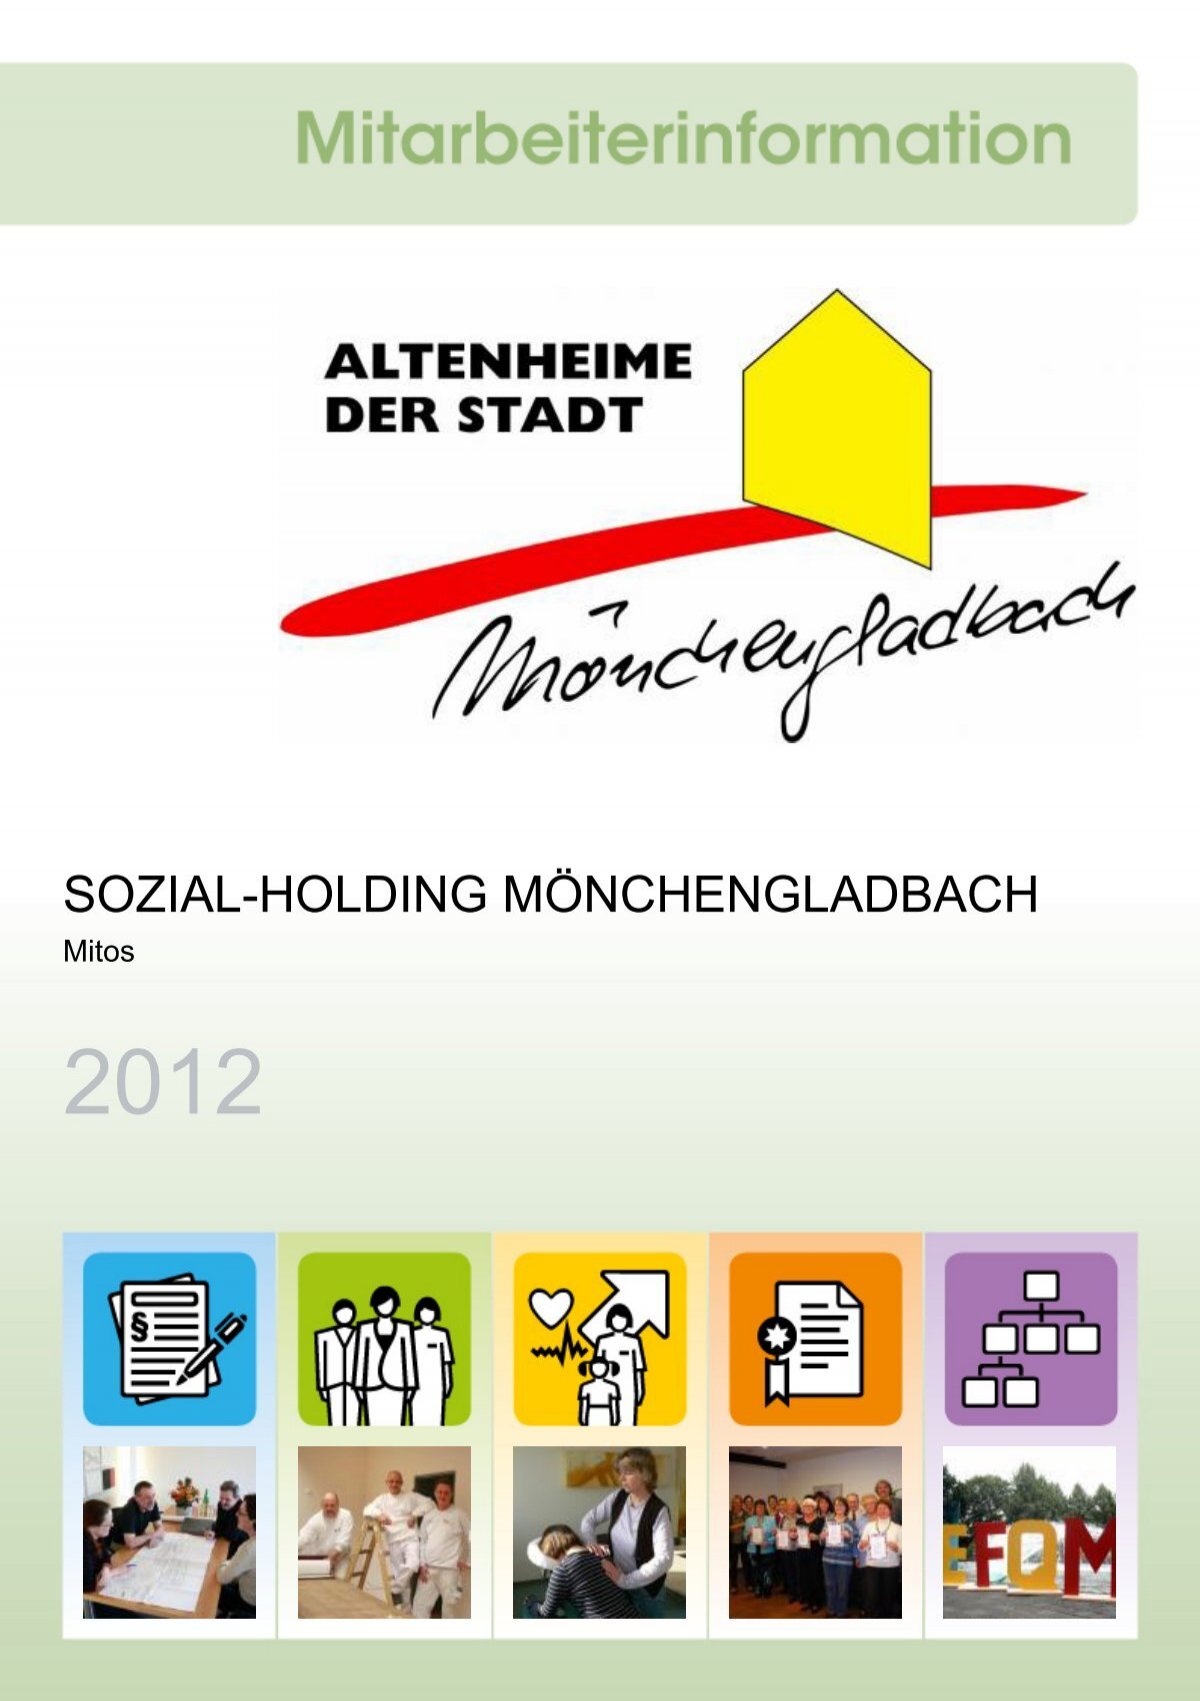 Altenheime der Stadt Mönchengladbach.pdf - Mitarbeiterinformation